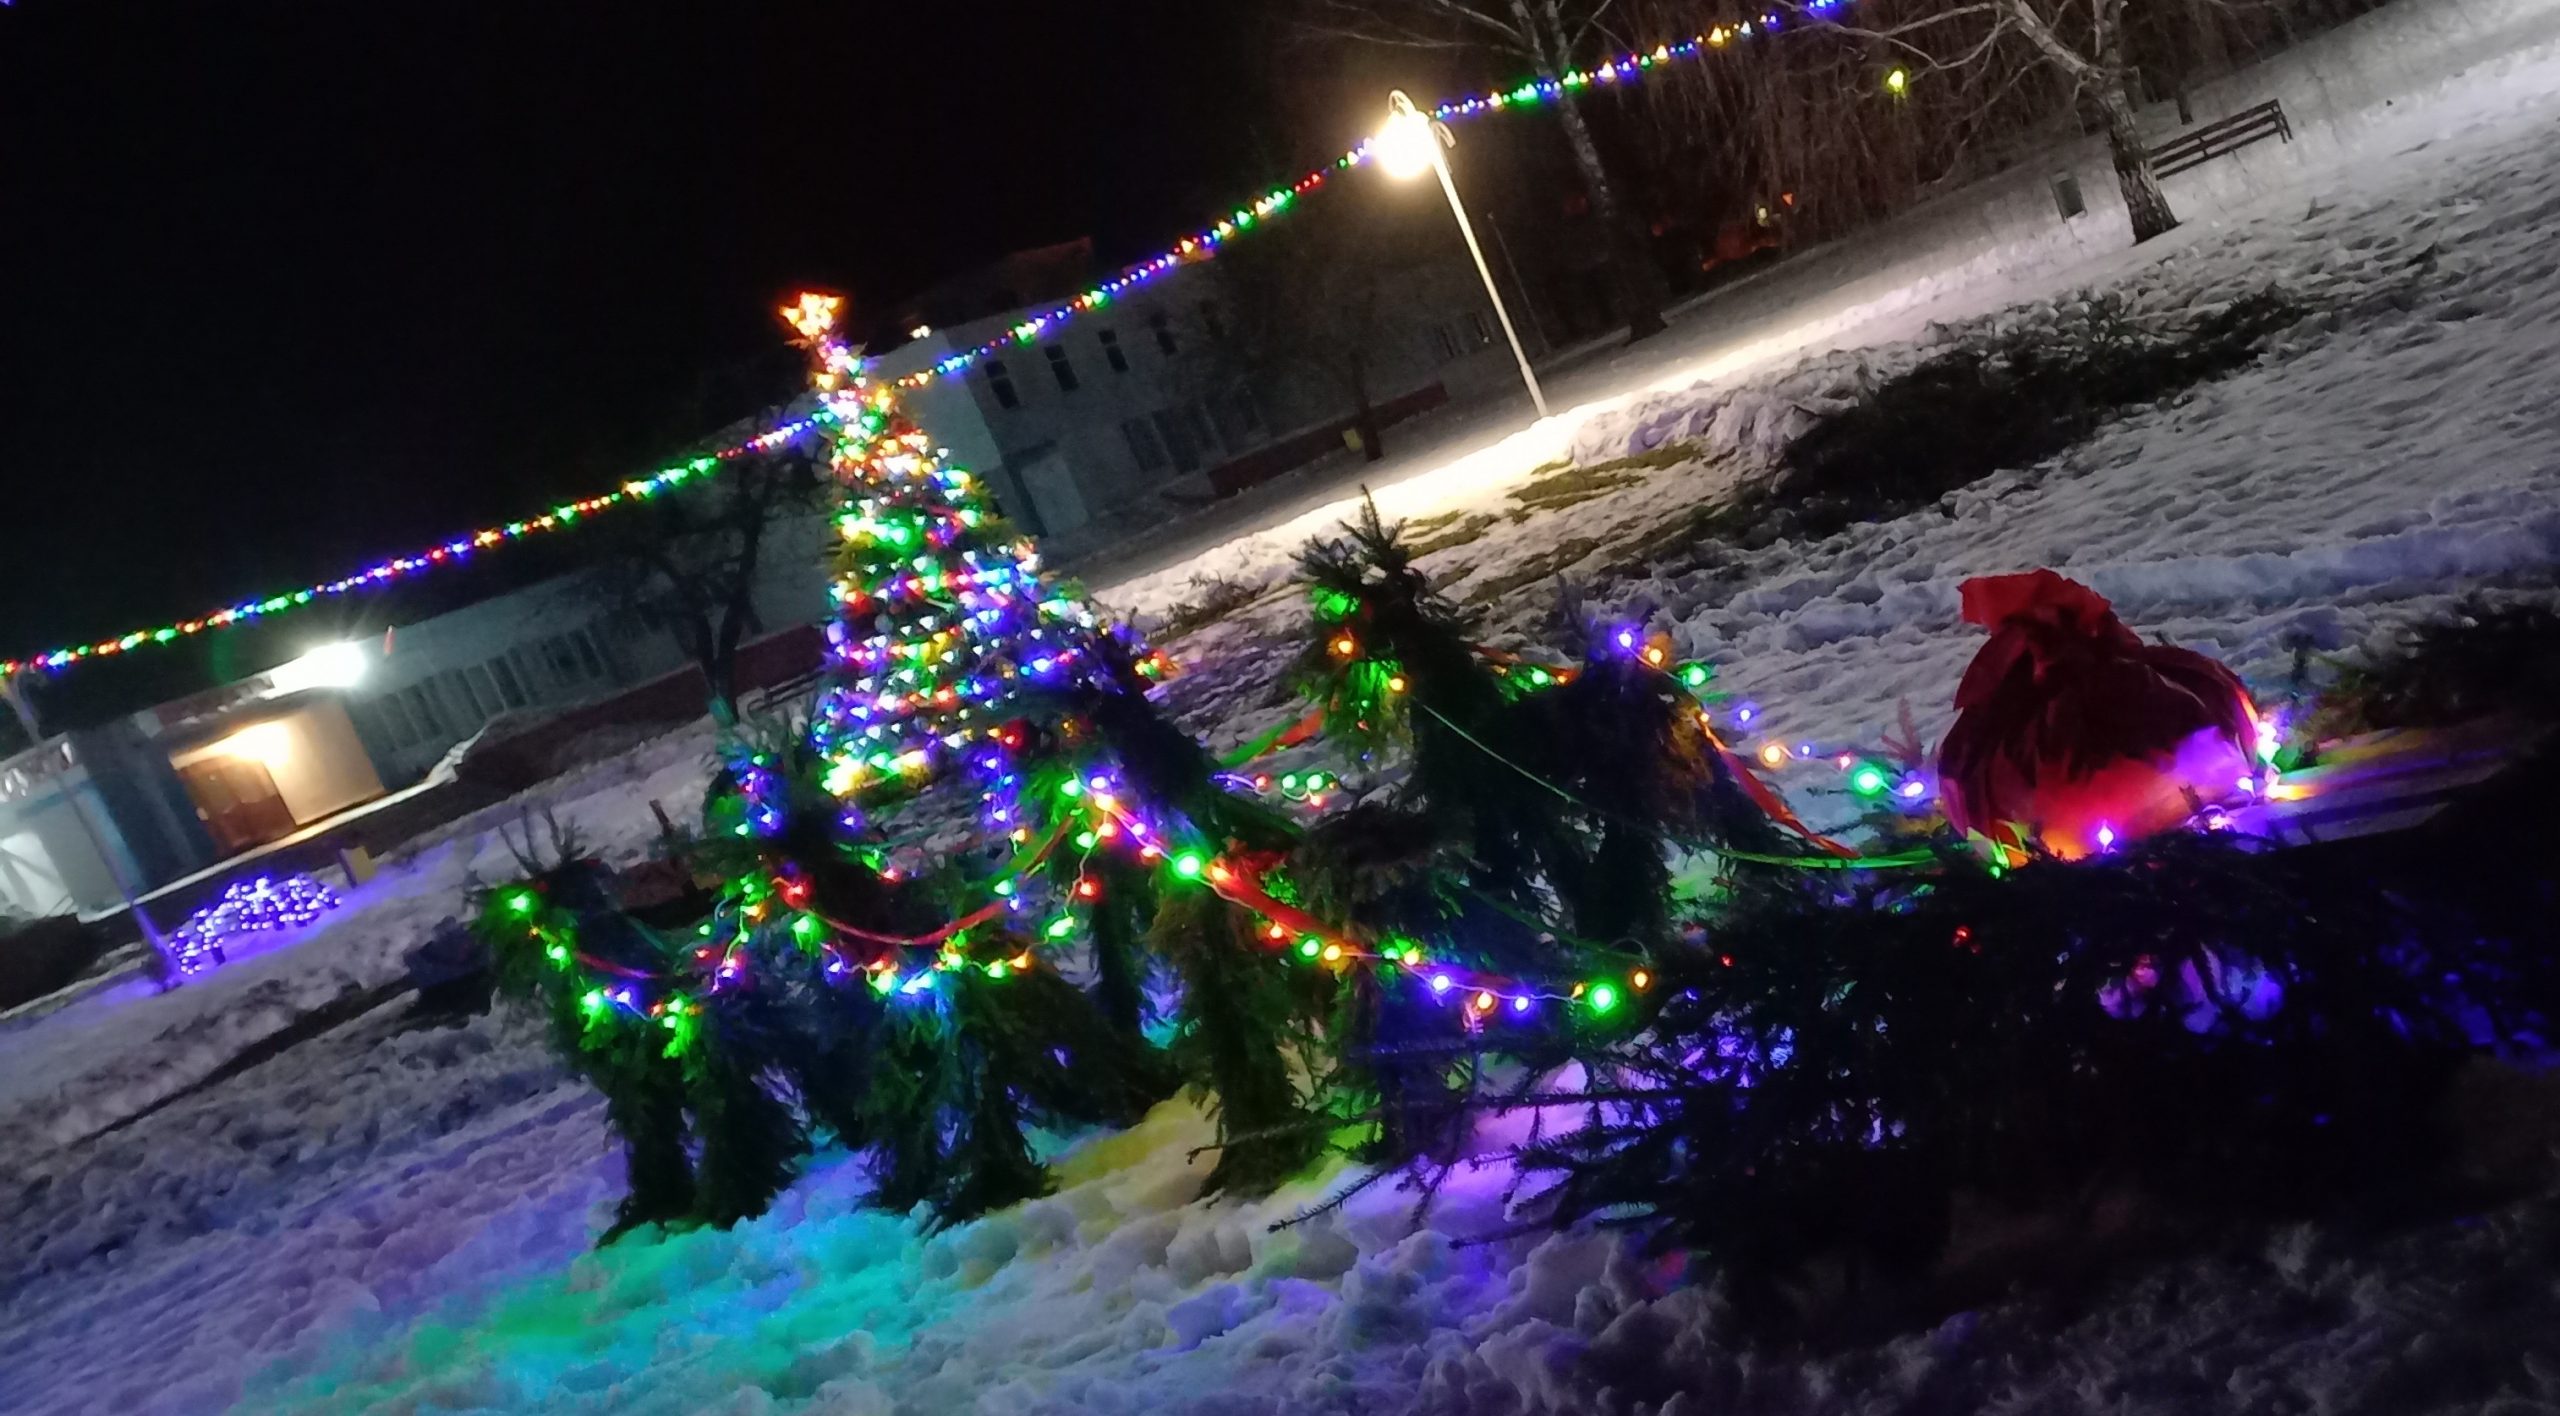 Смотр-конкурс на лучшее праздничное оформление новогодних елок пройдет в Бобруйском районе